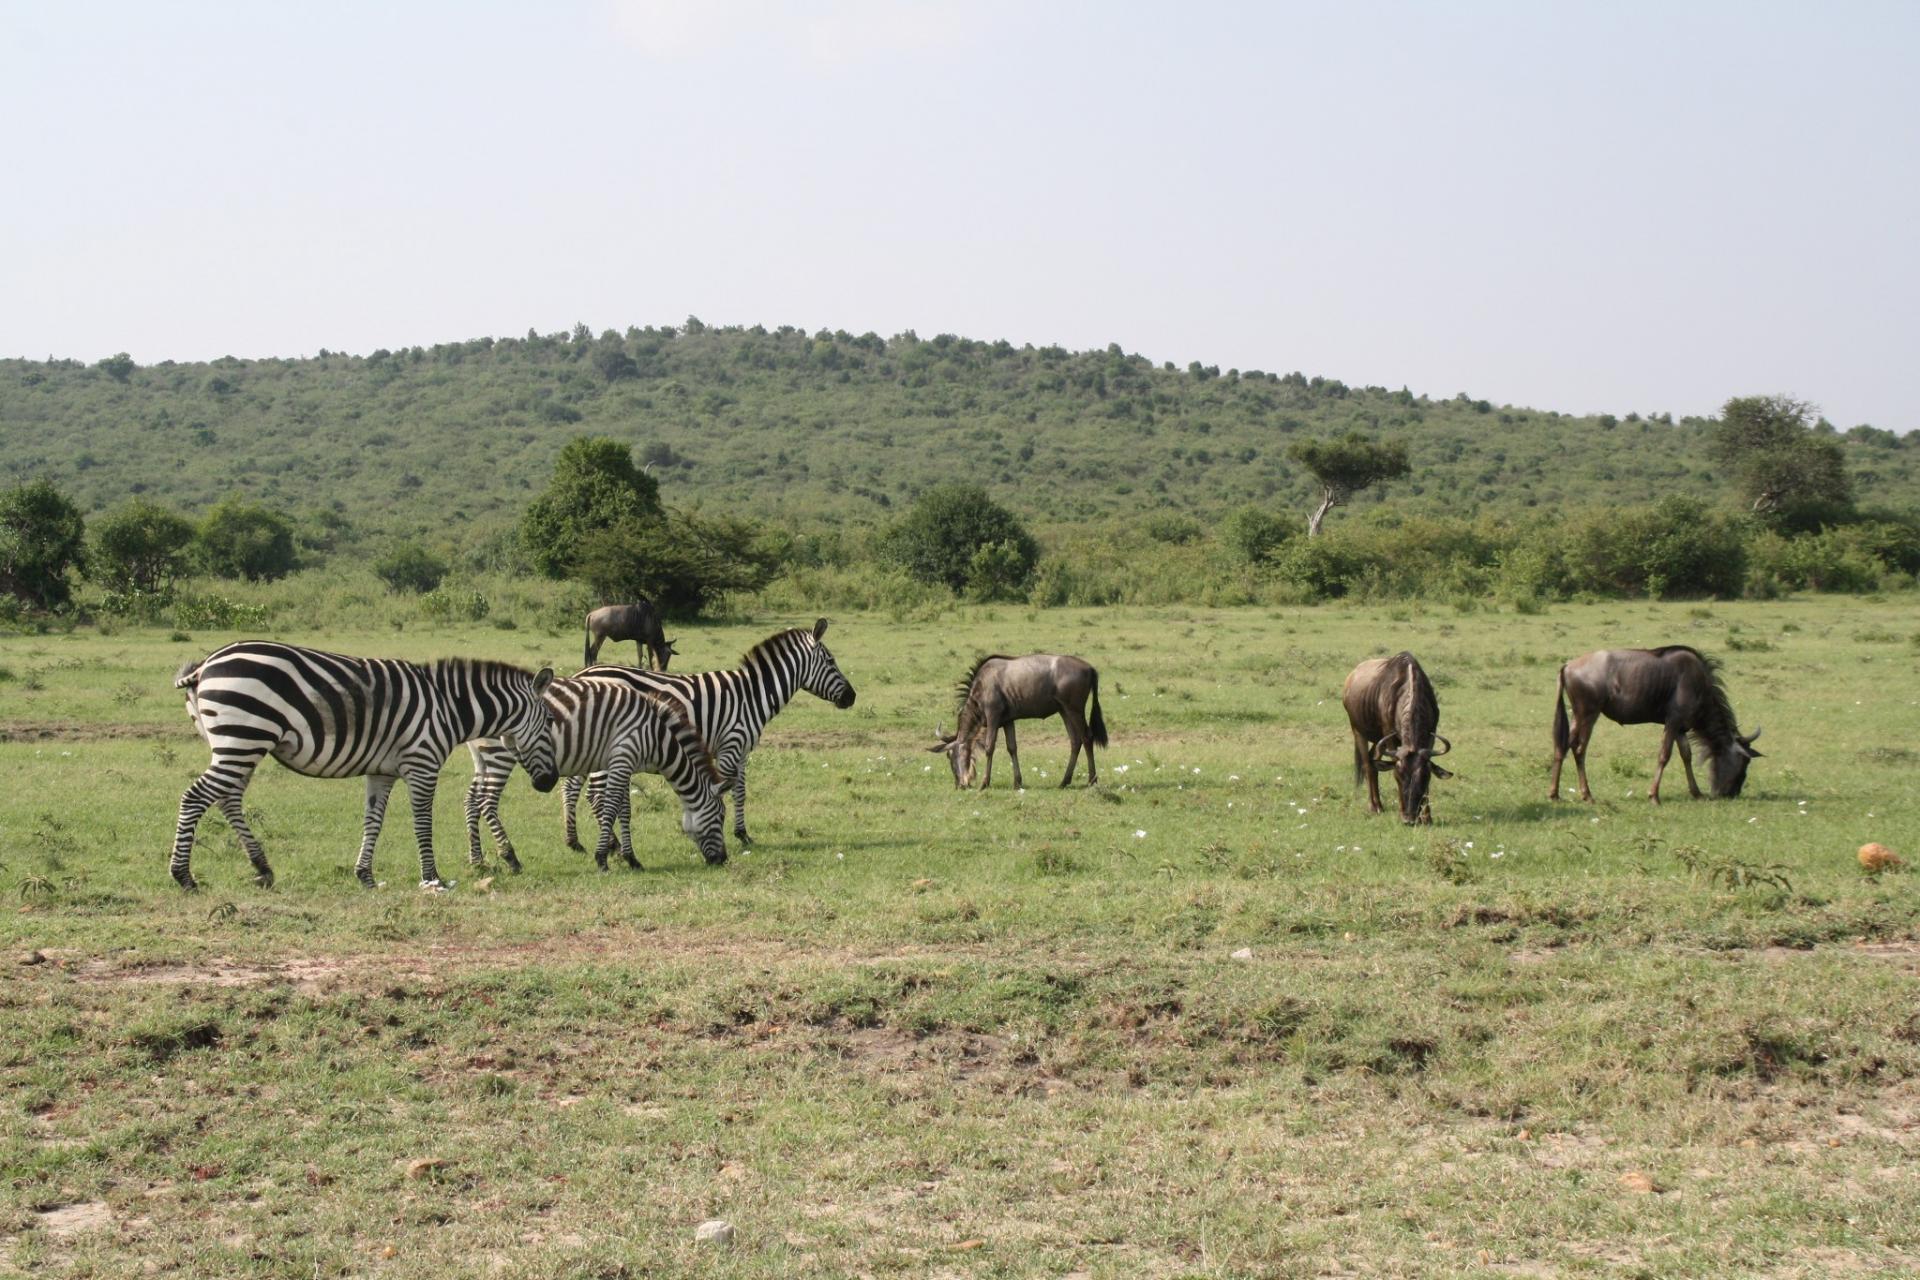 Kenya Short Safaris, YHA Kenya Travel, Adventure Safari Tours, Budget Camping Safaris,Short Tours Safari Bookings, 